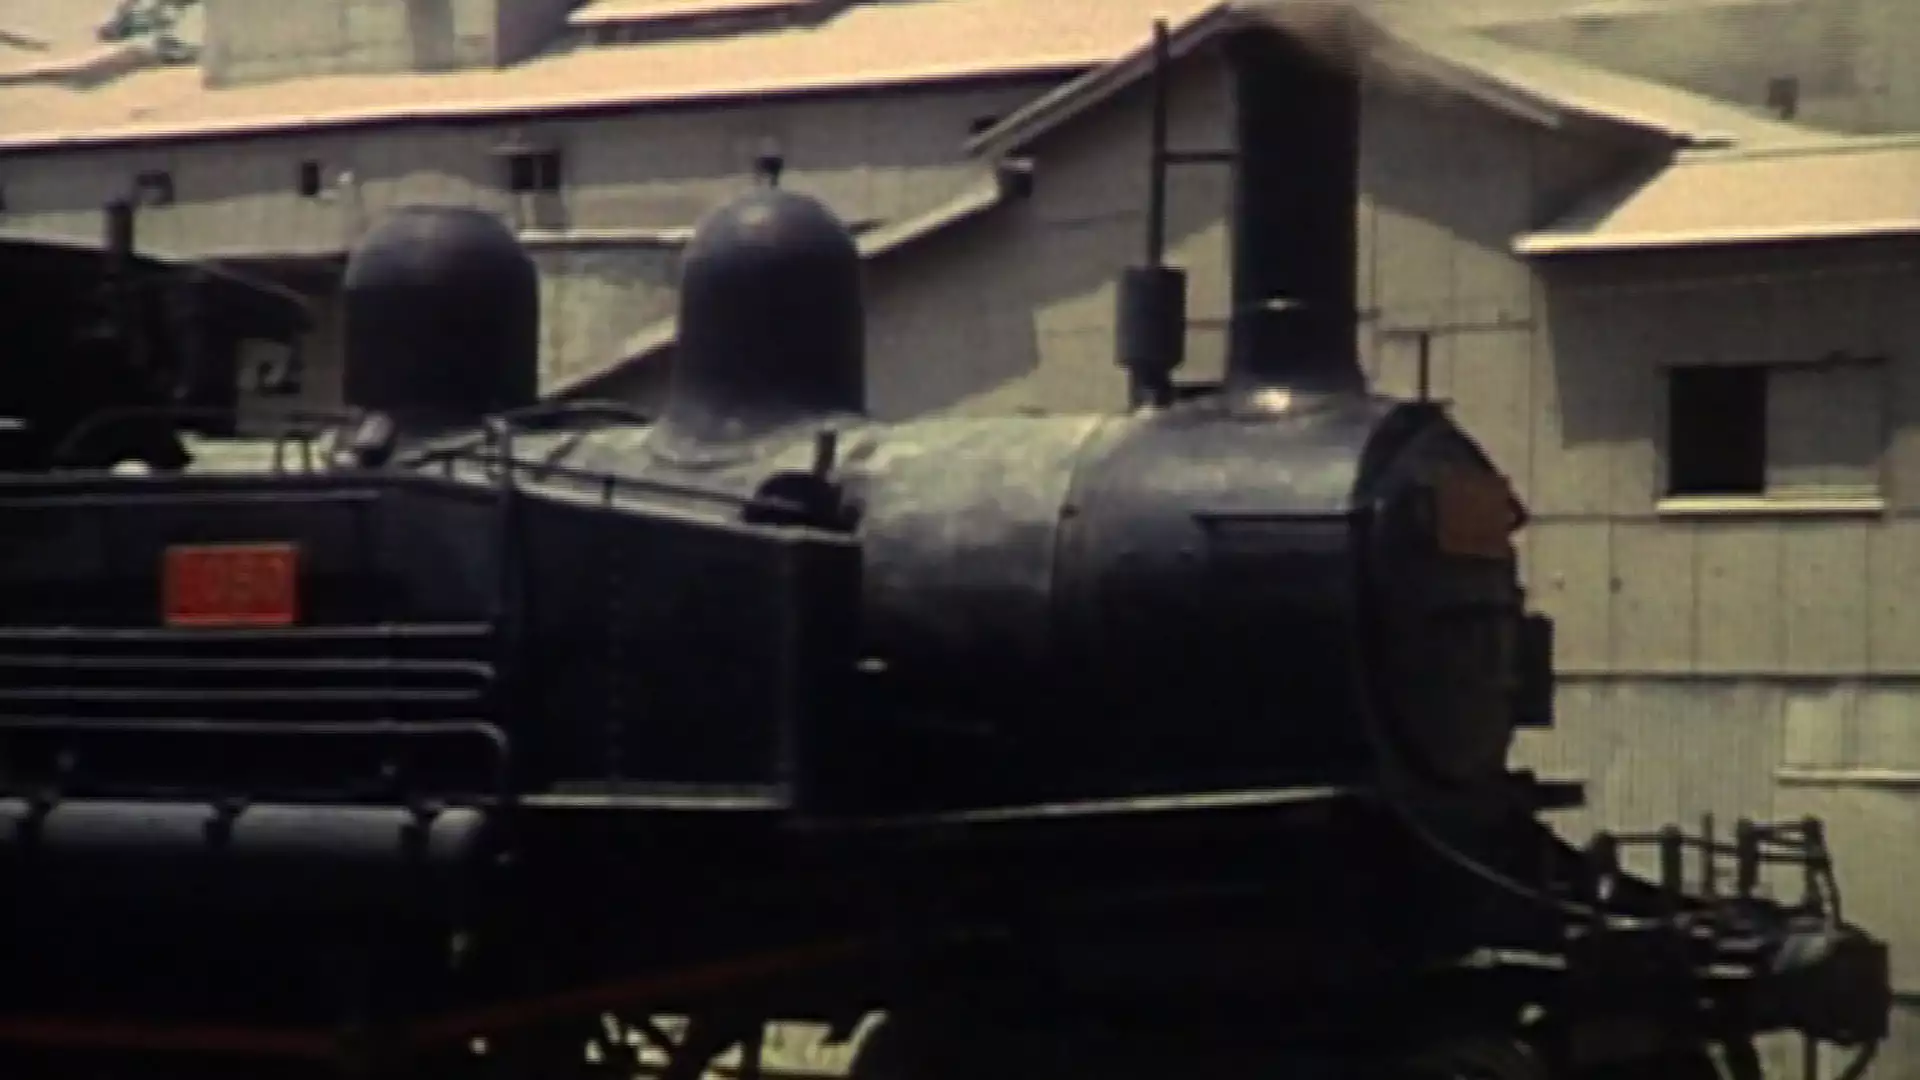 鉄道の記憶・萩原政男8mmフィルムアーカイヴスⅡ ～あの町、この村、日本の鉄道風景～